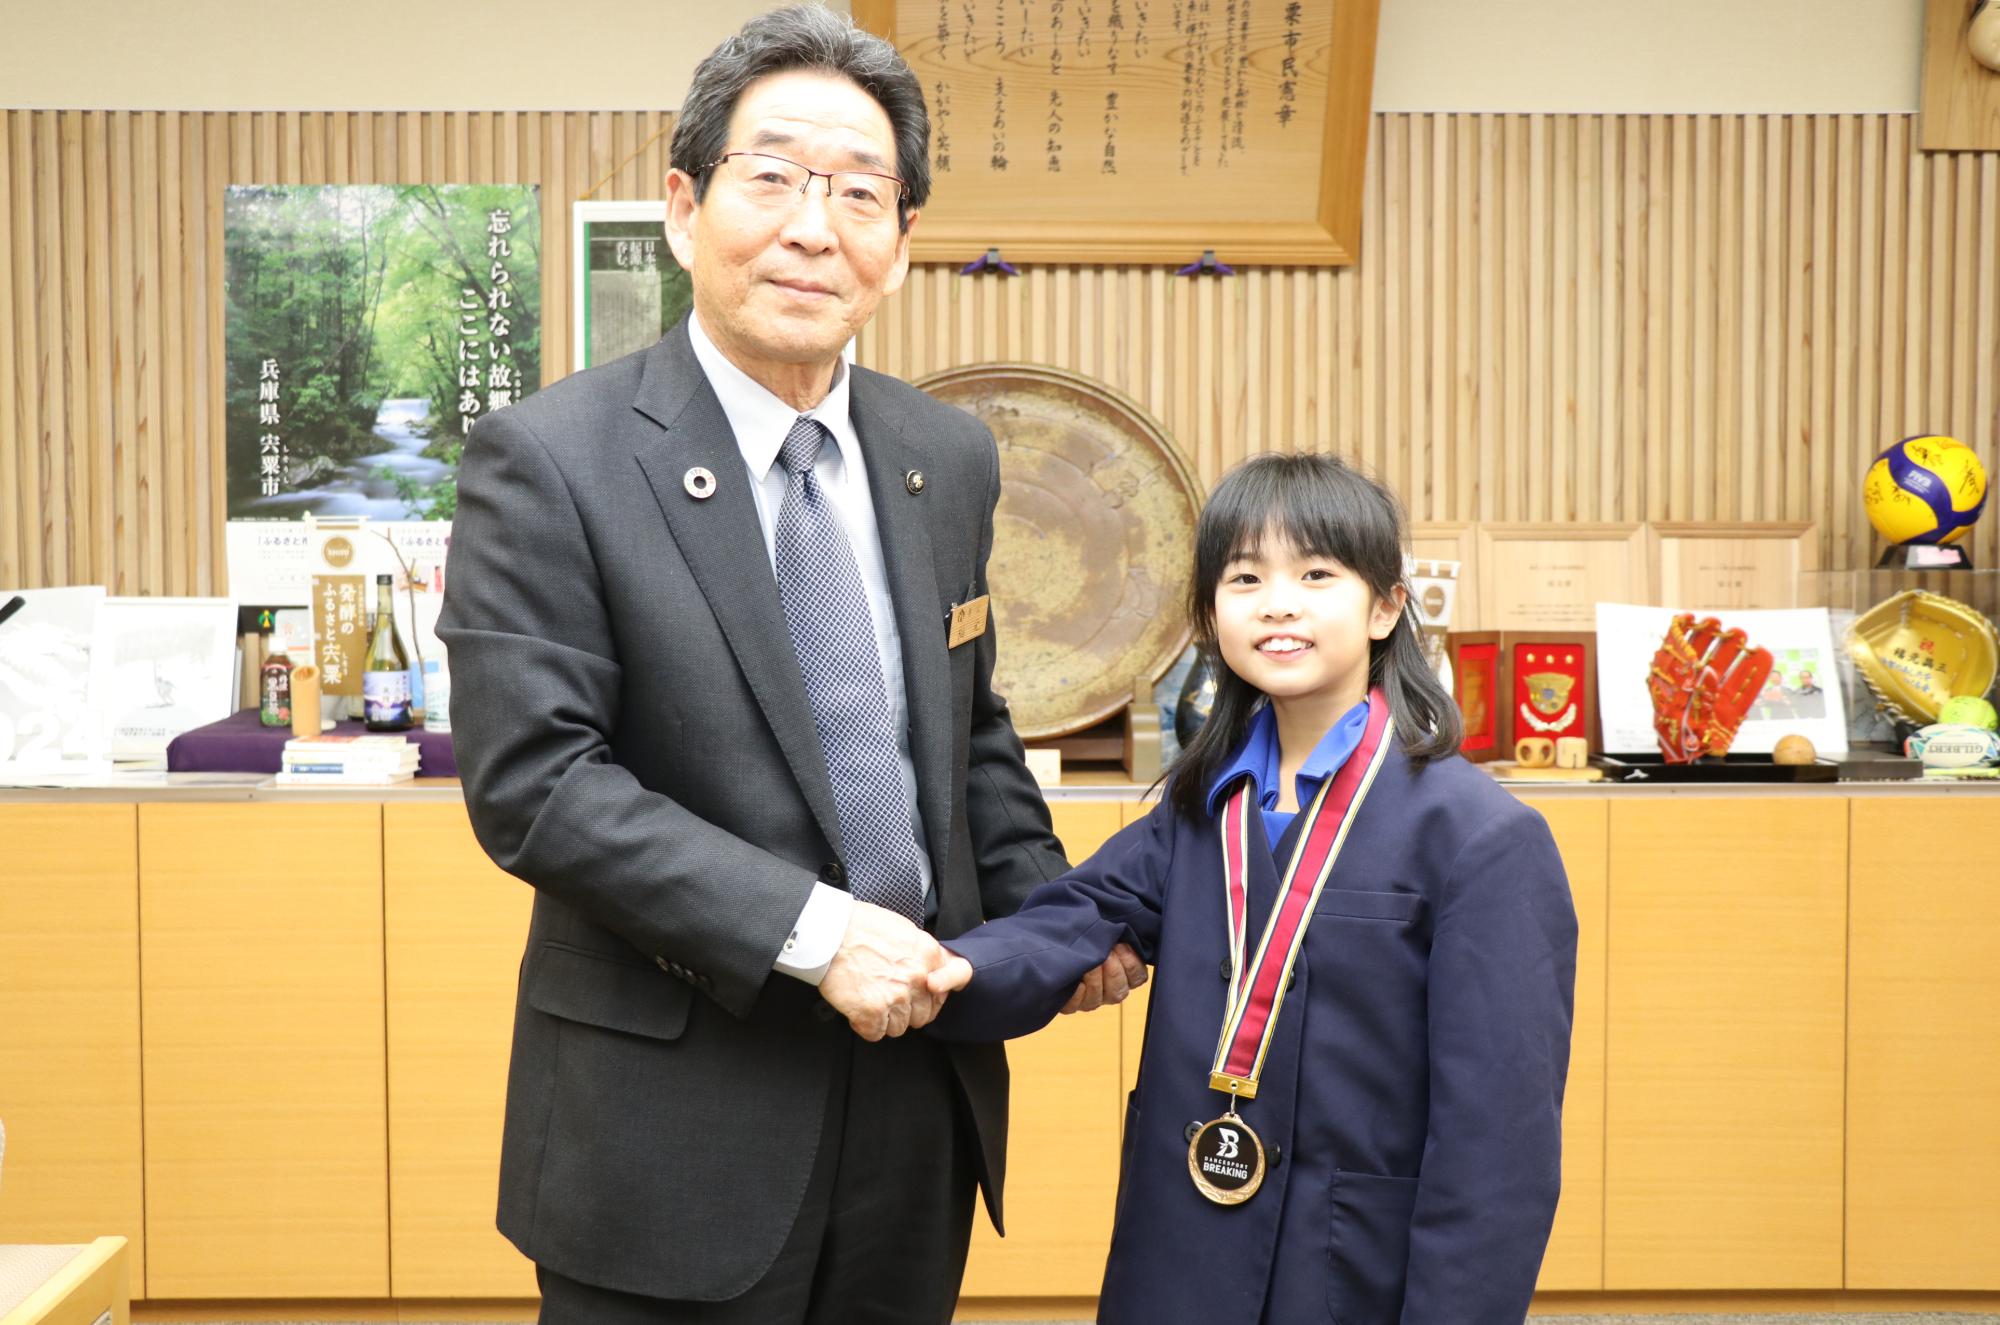 優勝メダルを首にかけた宇田さんと福元市長が市長室で横に並び、握手している写真